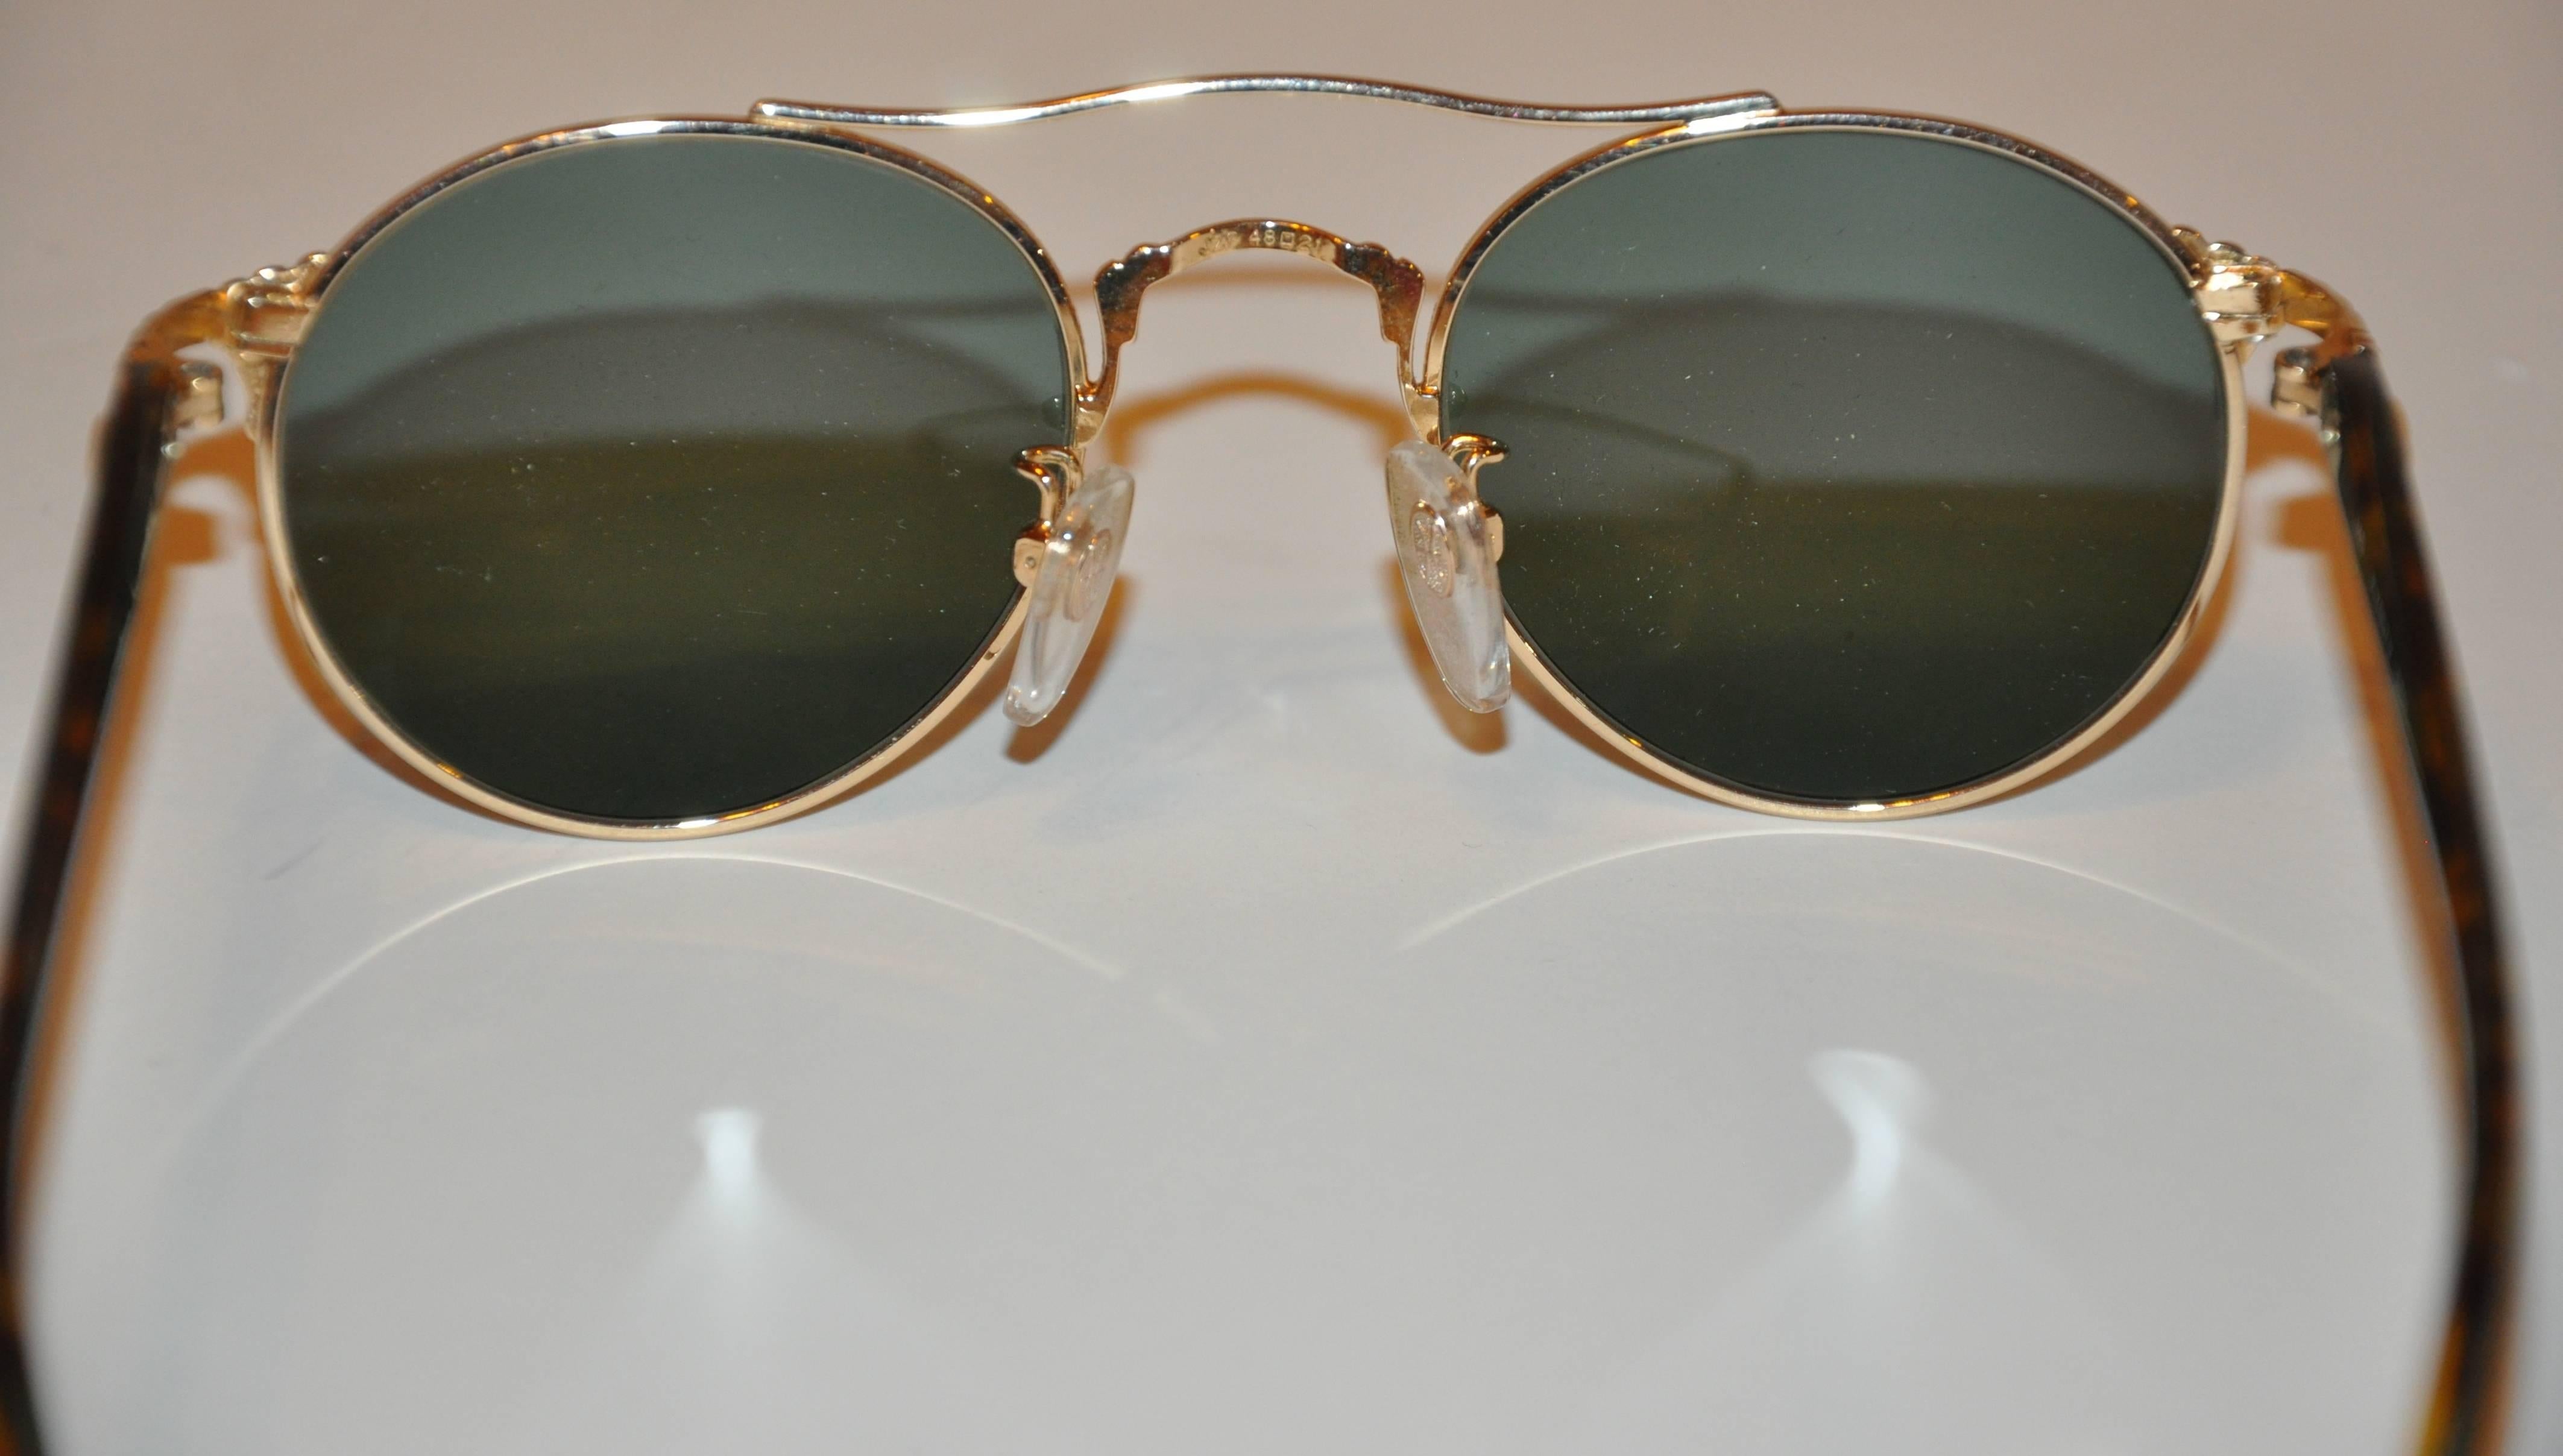        Les lunettes de soleil Kansai Yamamoto sont dotées d'une quincaillerie dorée merveilleusement détaillée et sont accentuées par une quincaillerie gravée sur le devant et les coins du bras. Les bras sont rehaussés d'écailles de tortue aux